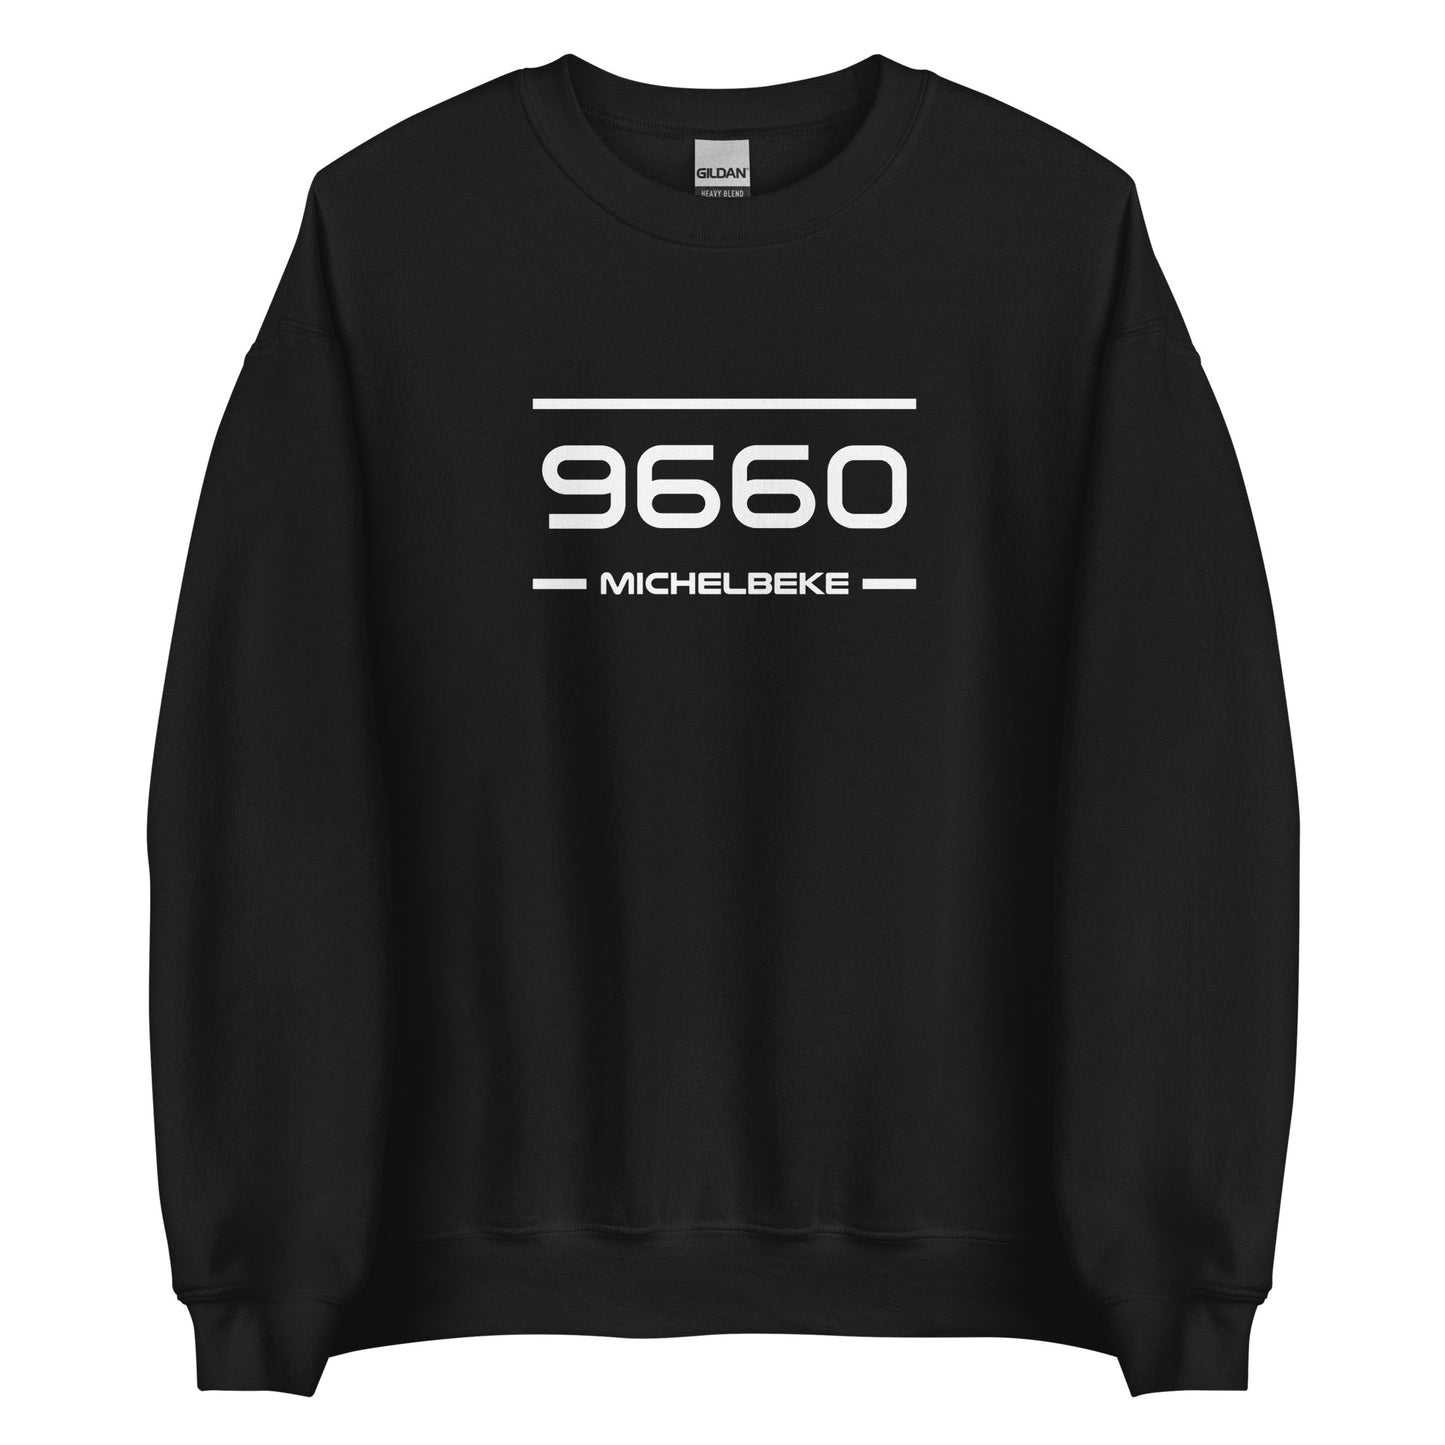 Sweater - 9660 - Michelbeke (M/V)